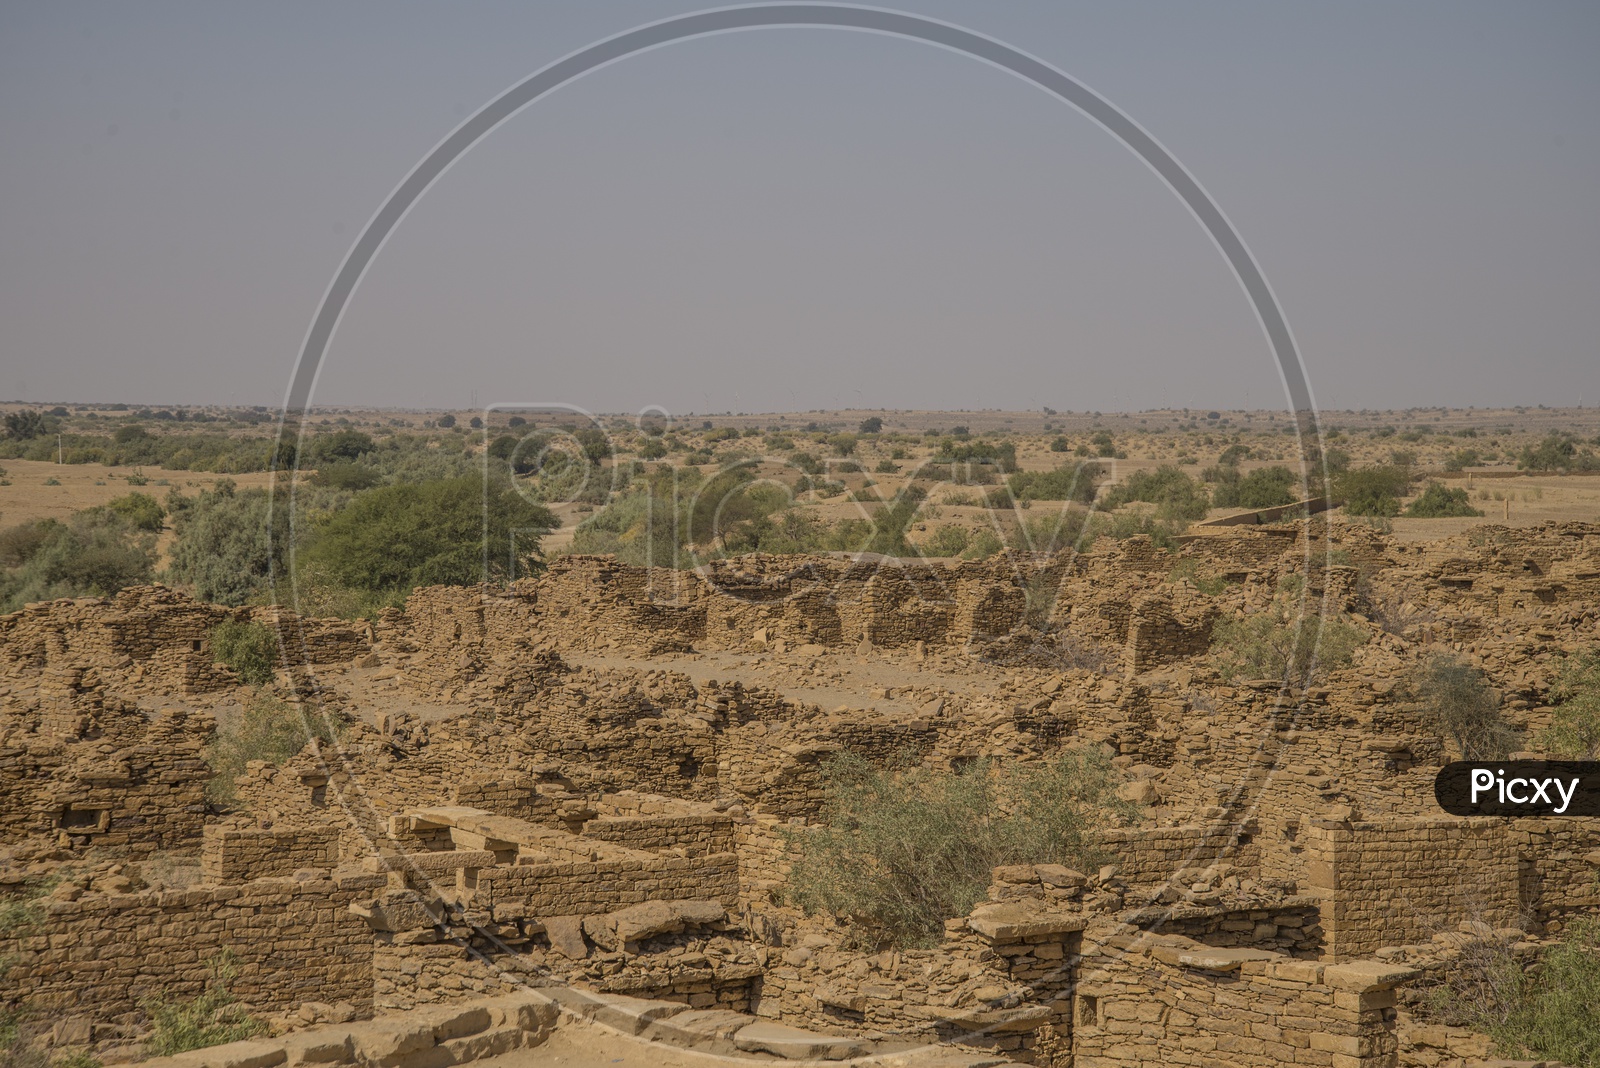 Kuldhara Village, near Jaisalmer